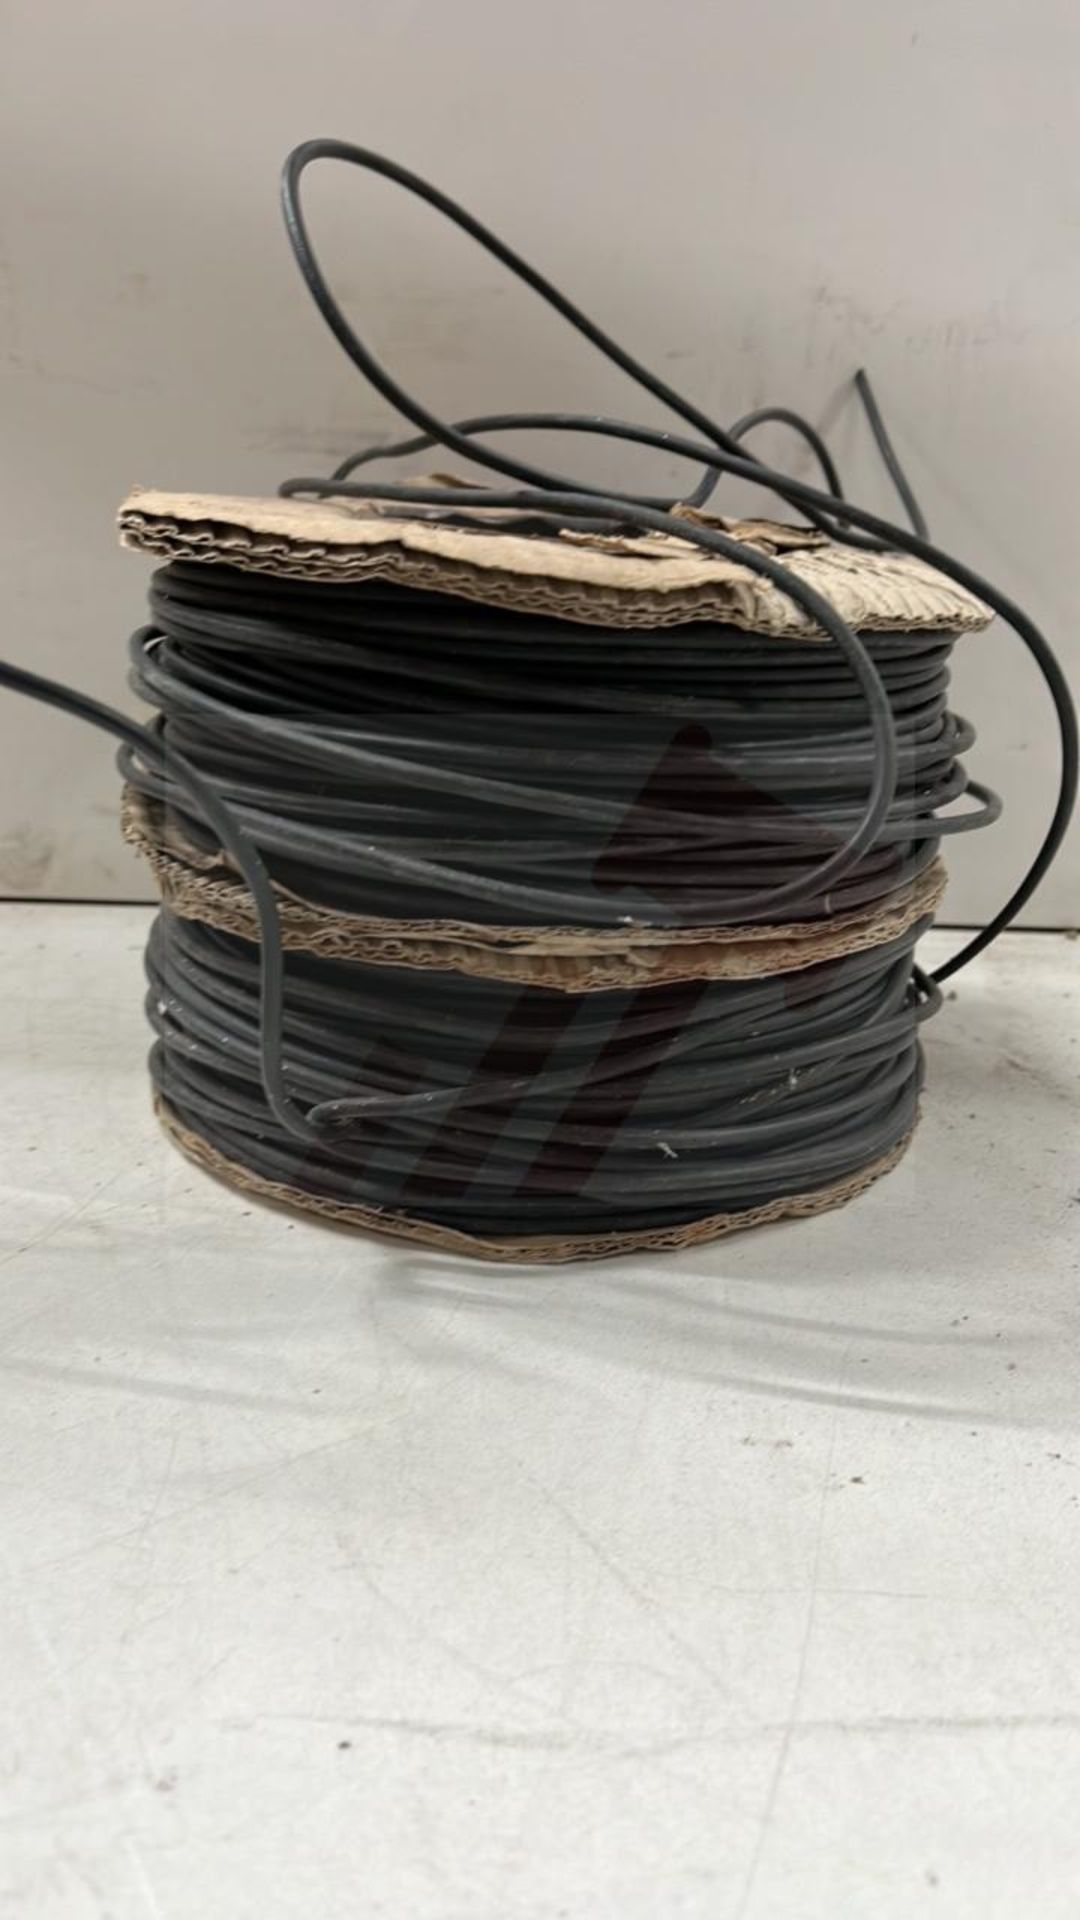 2 x Reels Of Single Core Black Wire